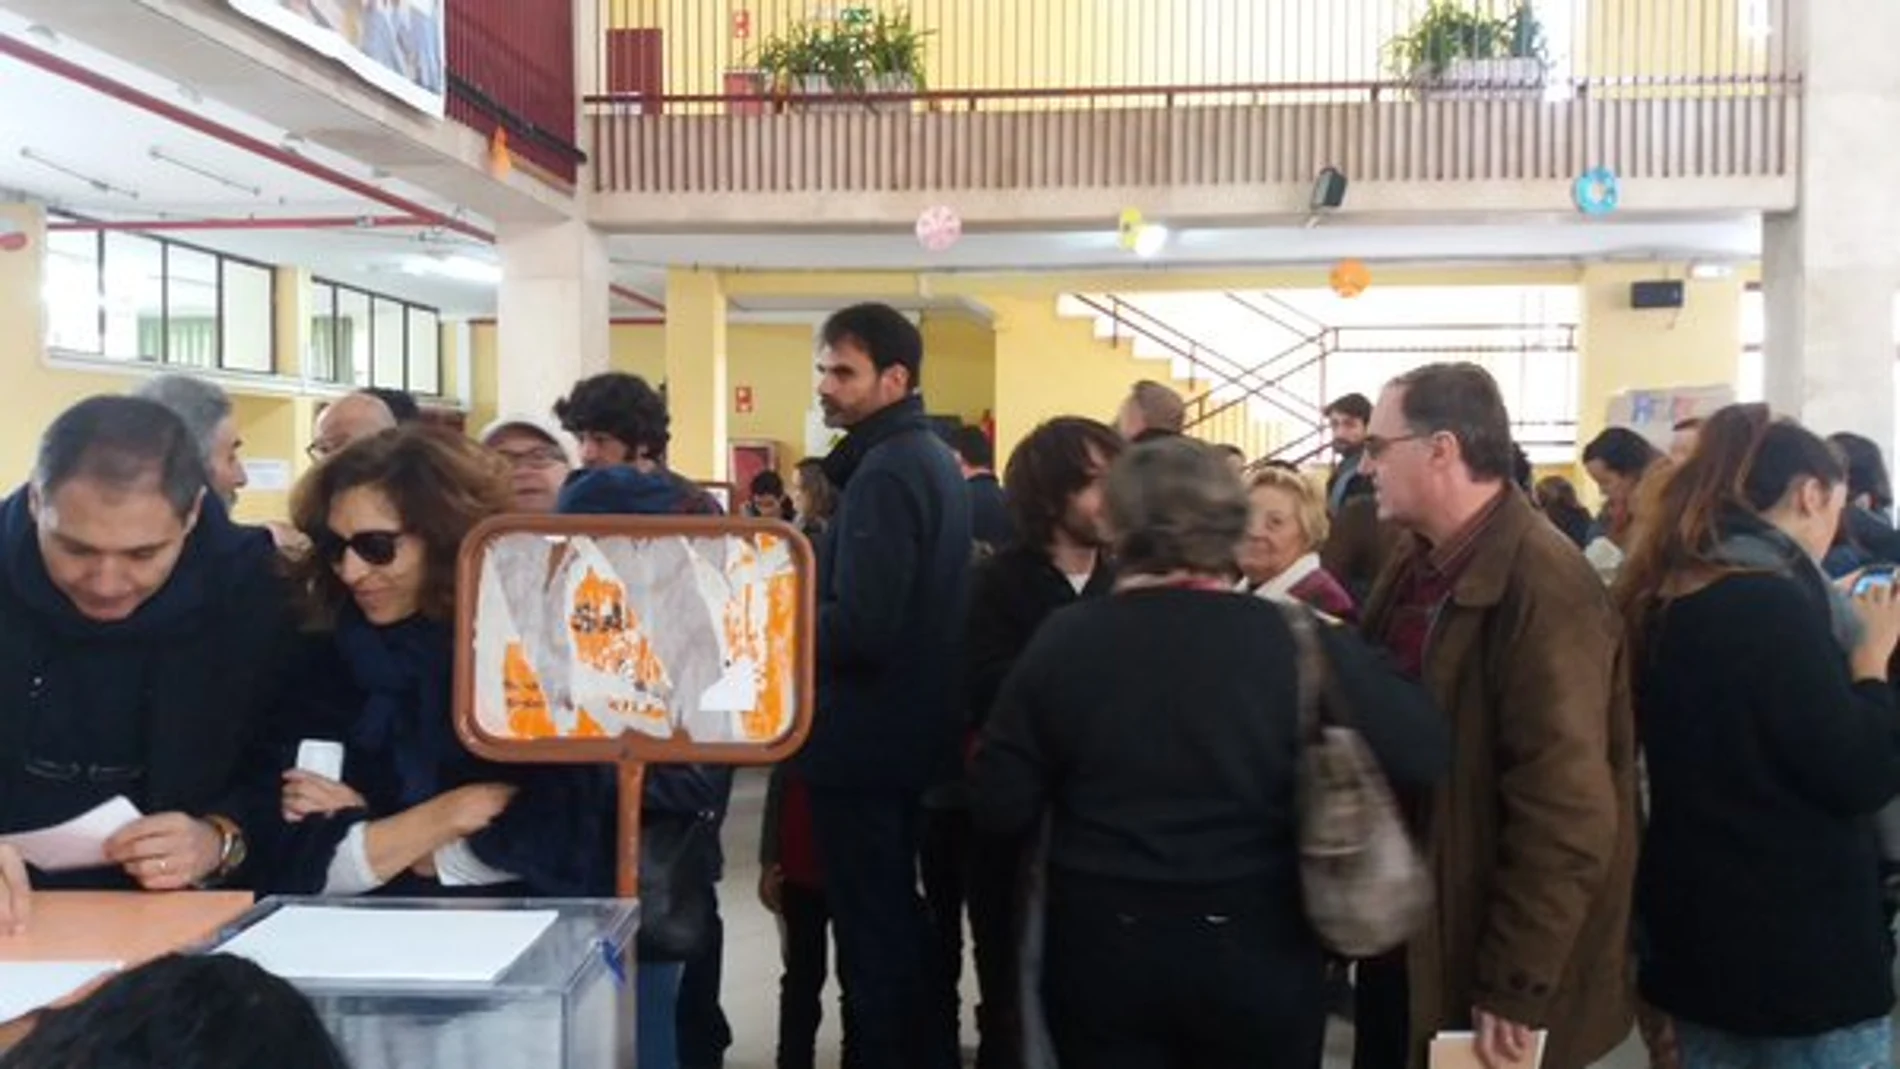 Colegio electoral donde ha votado Mariano Rajoy